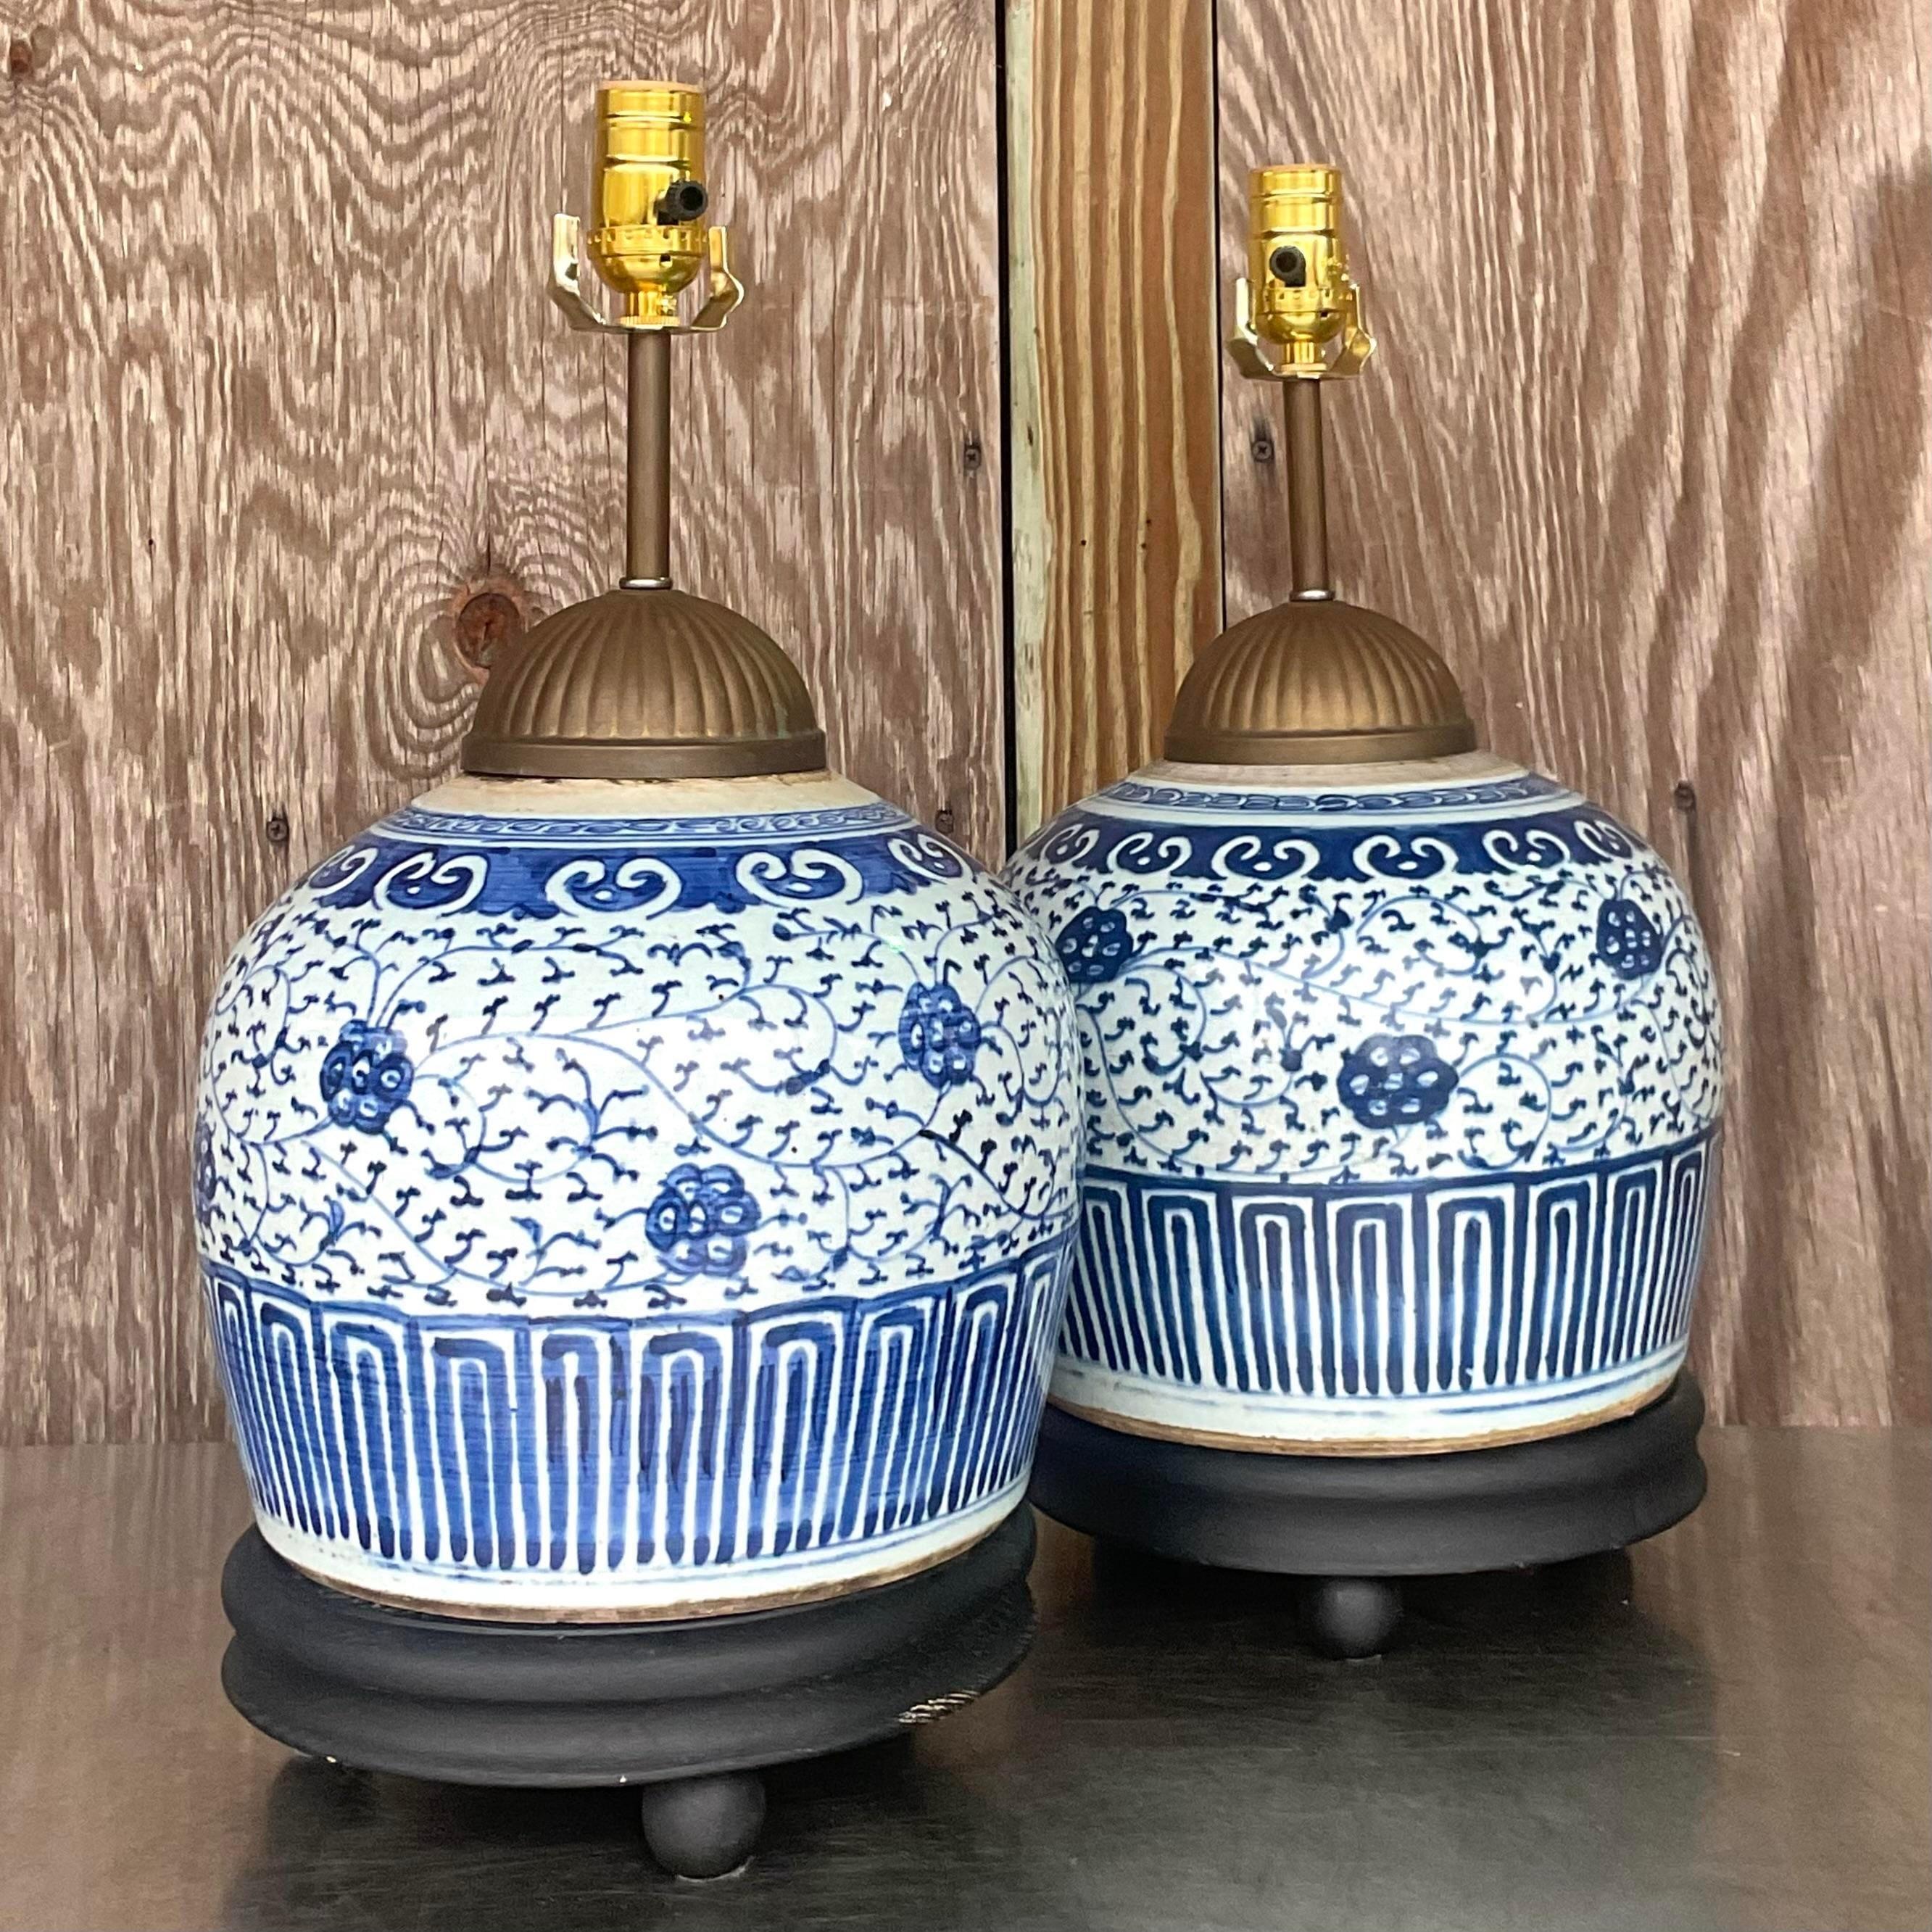 Une fabuleuse paire de lampes de table asiatiques vintage. Un design classique de Gardenia dans le bleu et le blanc emblématiques. Repose sur des socles en bois recyclé. Acquis d'une propriété de Palm Beach.